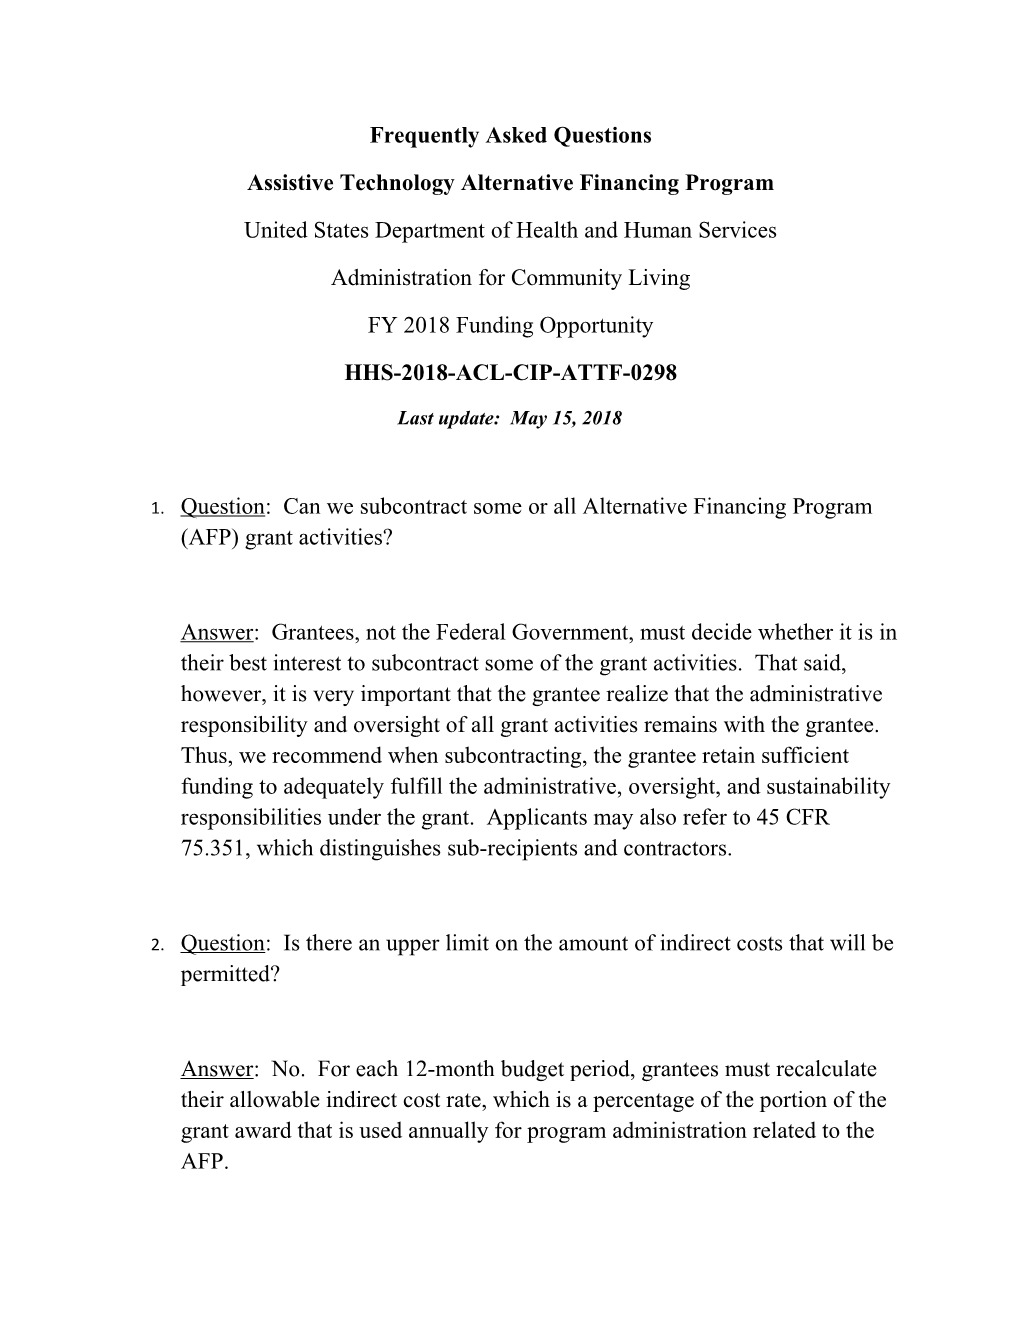 Assistive Technology Alternative Financing Program